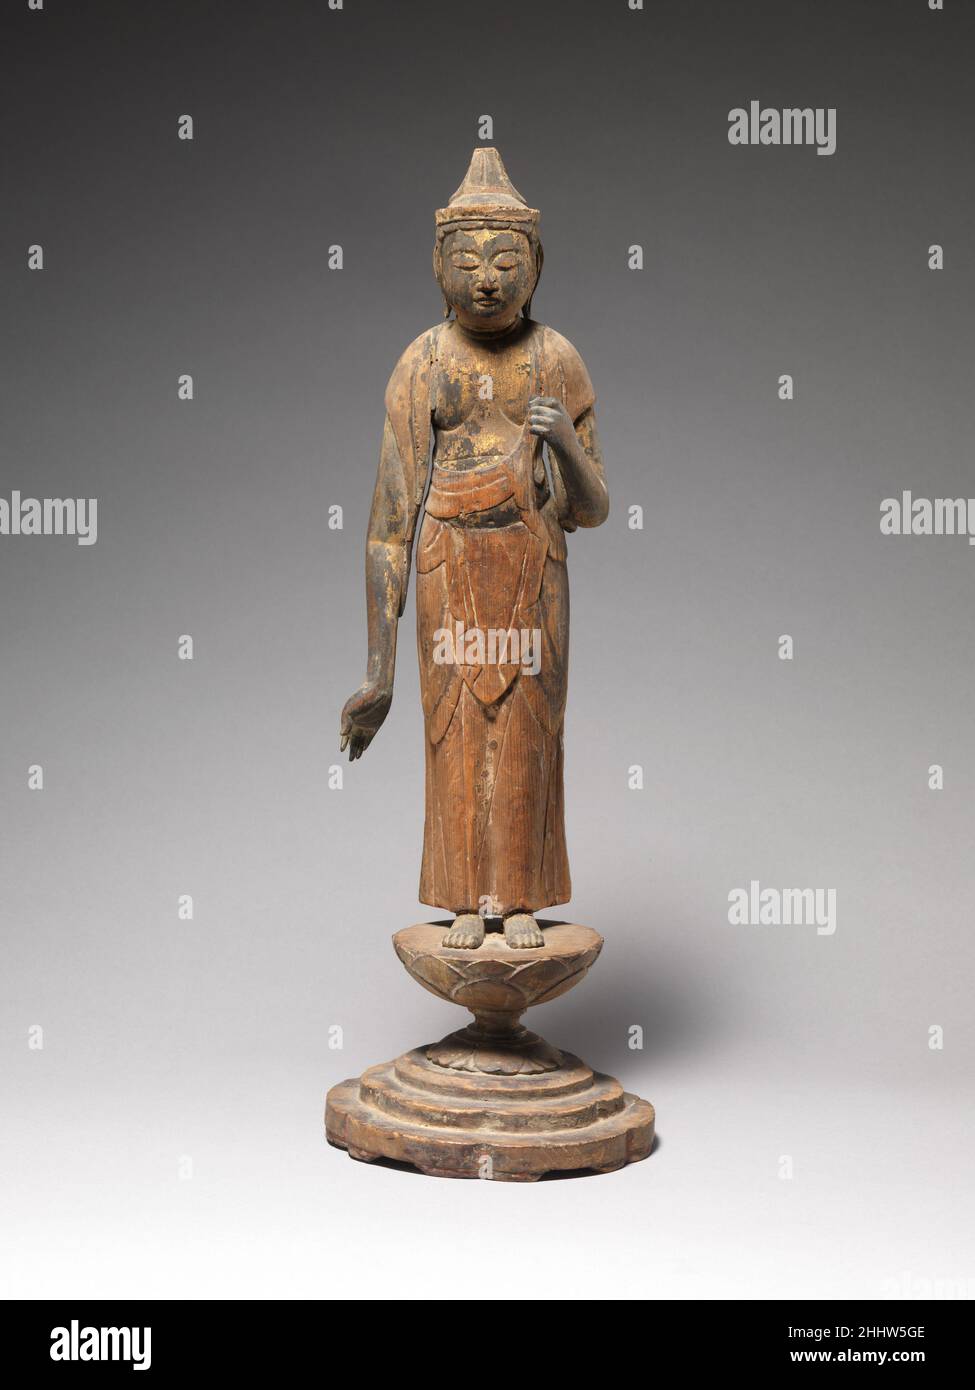 Shō Kannon 12th siècle Japon la pose frontale et la drapery aplatie sont évocatrices du statut de Shō Kannon comme la principale incarnation d'Avalokiteshvara, le bodhisattva de la compassion.Produit à la fin de la période Heian au Japon, lorsque le bois était un milieu fortement favorisé pour les figures de dévotion, ce travail aurait fait partie d'un ensemble sculptural.Le poing levé de la figure tenait probablement une fleur de lotus, maintenant perdu.Des traces de pigment sur le corps et le vêtement suggèrent que la surface aurait été entièrement peinte.Shō Kannon 49257 Banque D'Images